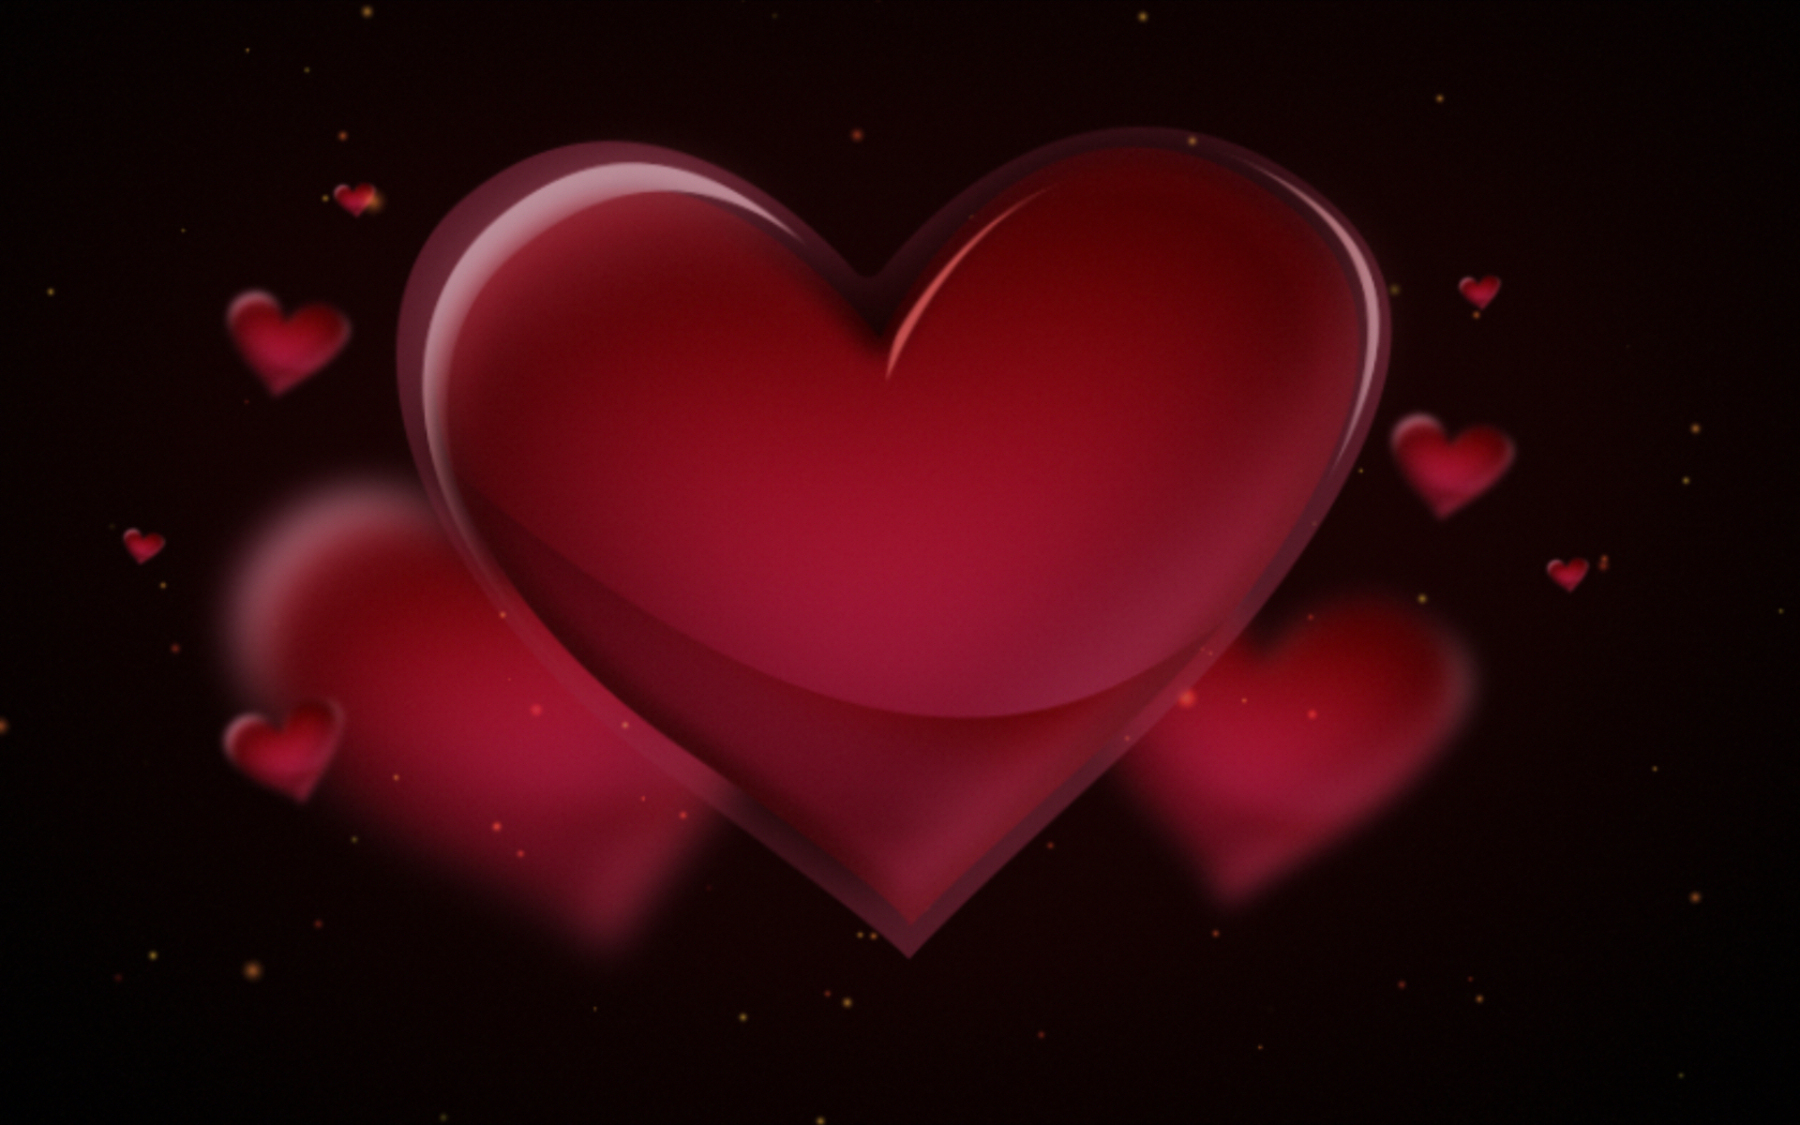 Red Love Heart Wallpaper For Mobile